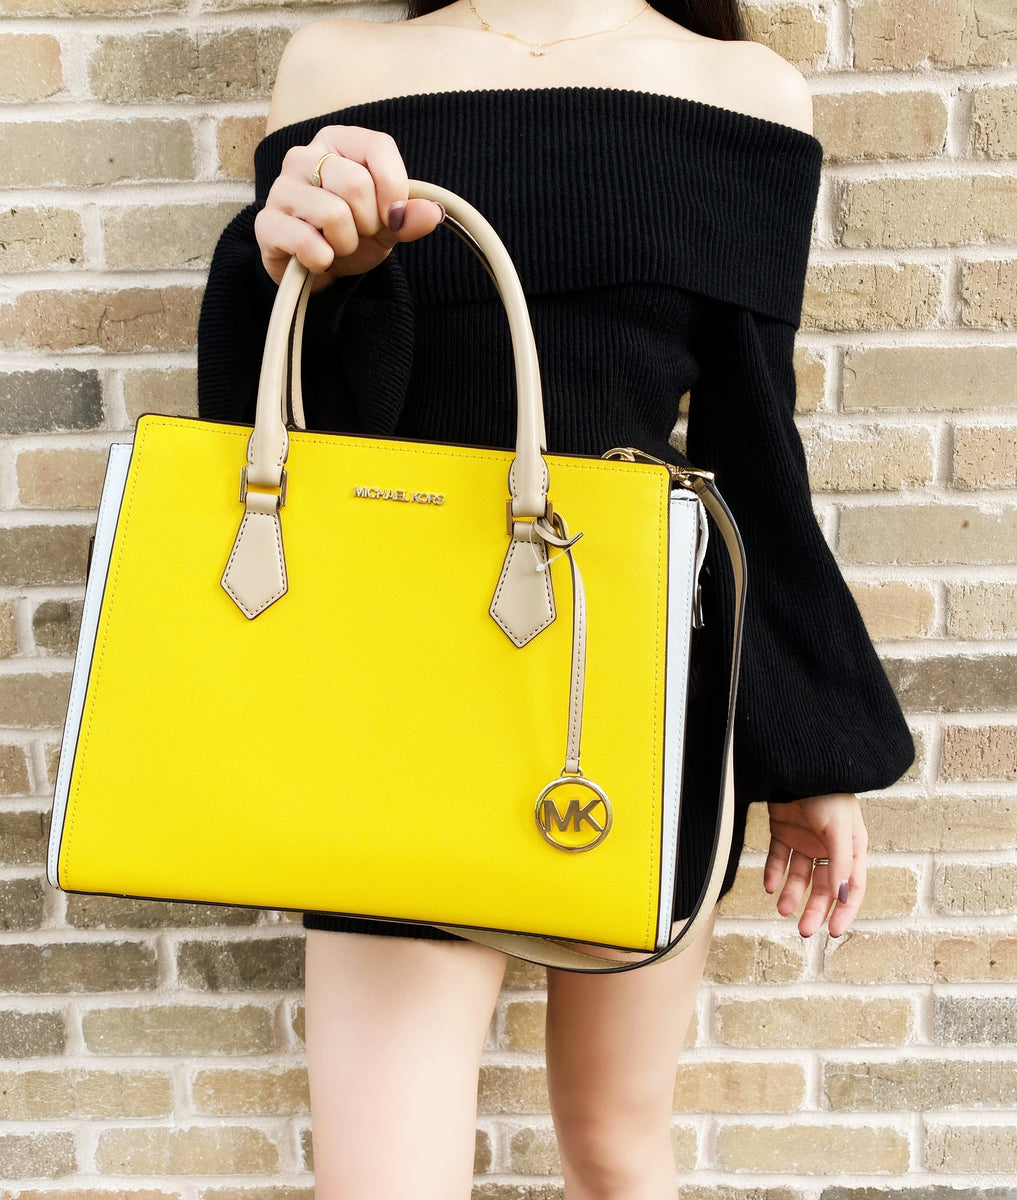 michael kors yellow handbag